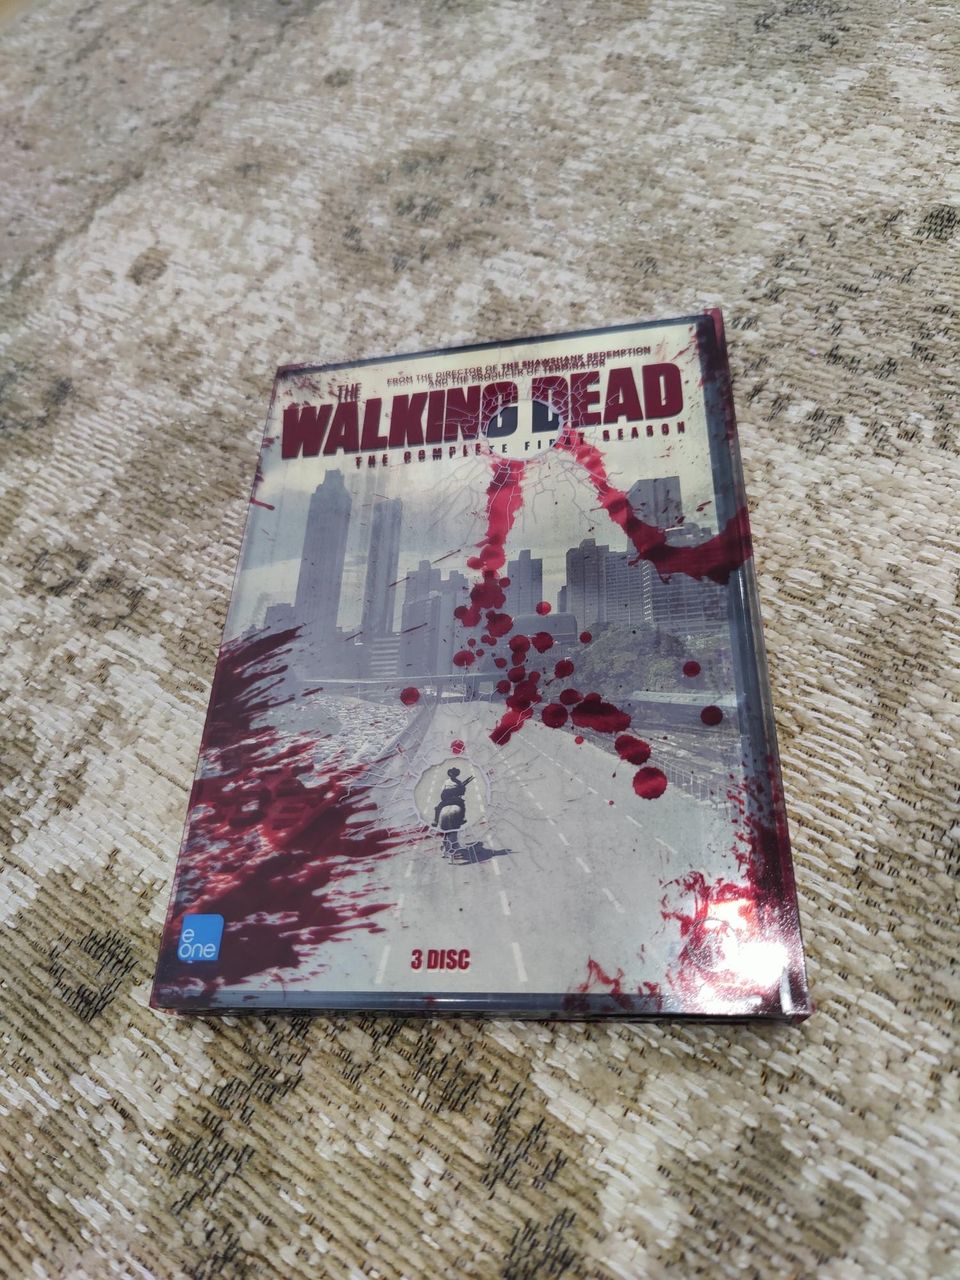 The Walking Dead ensimmäinen tuotantokausi DVD